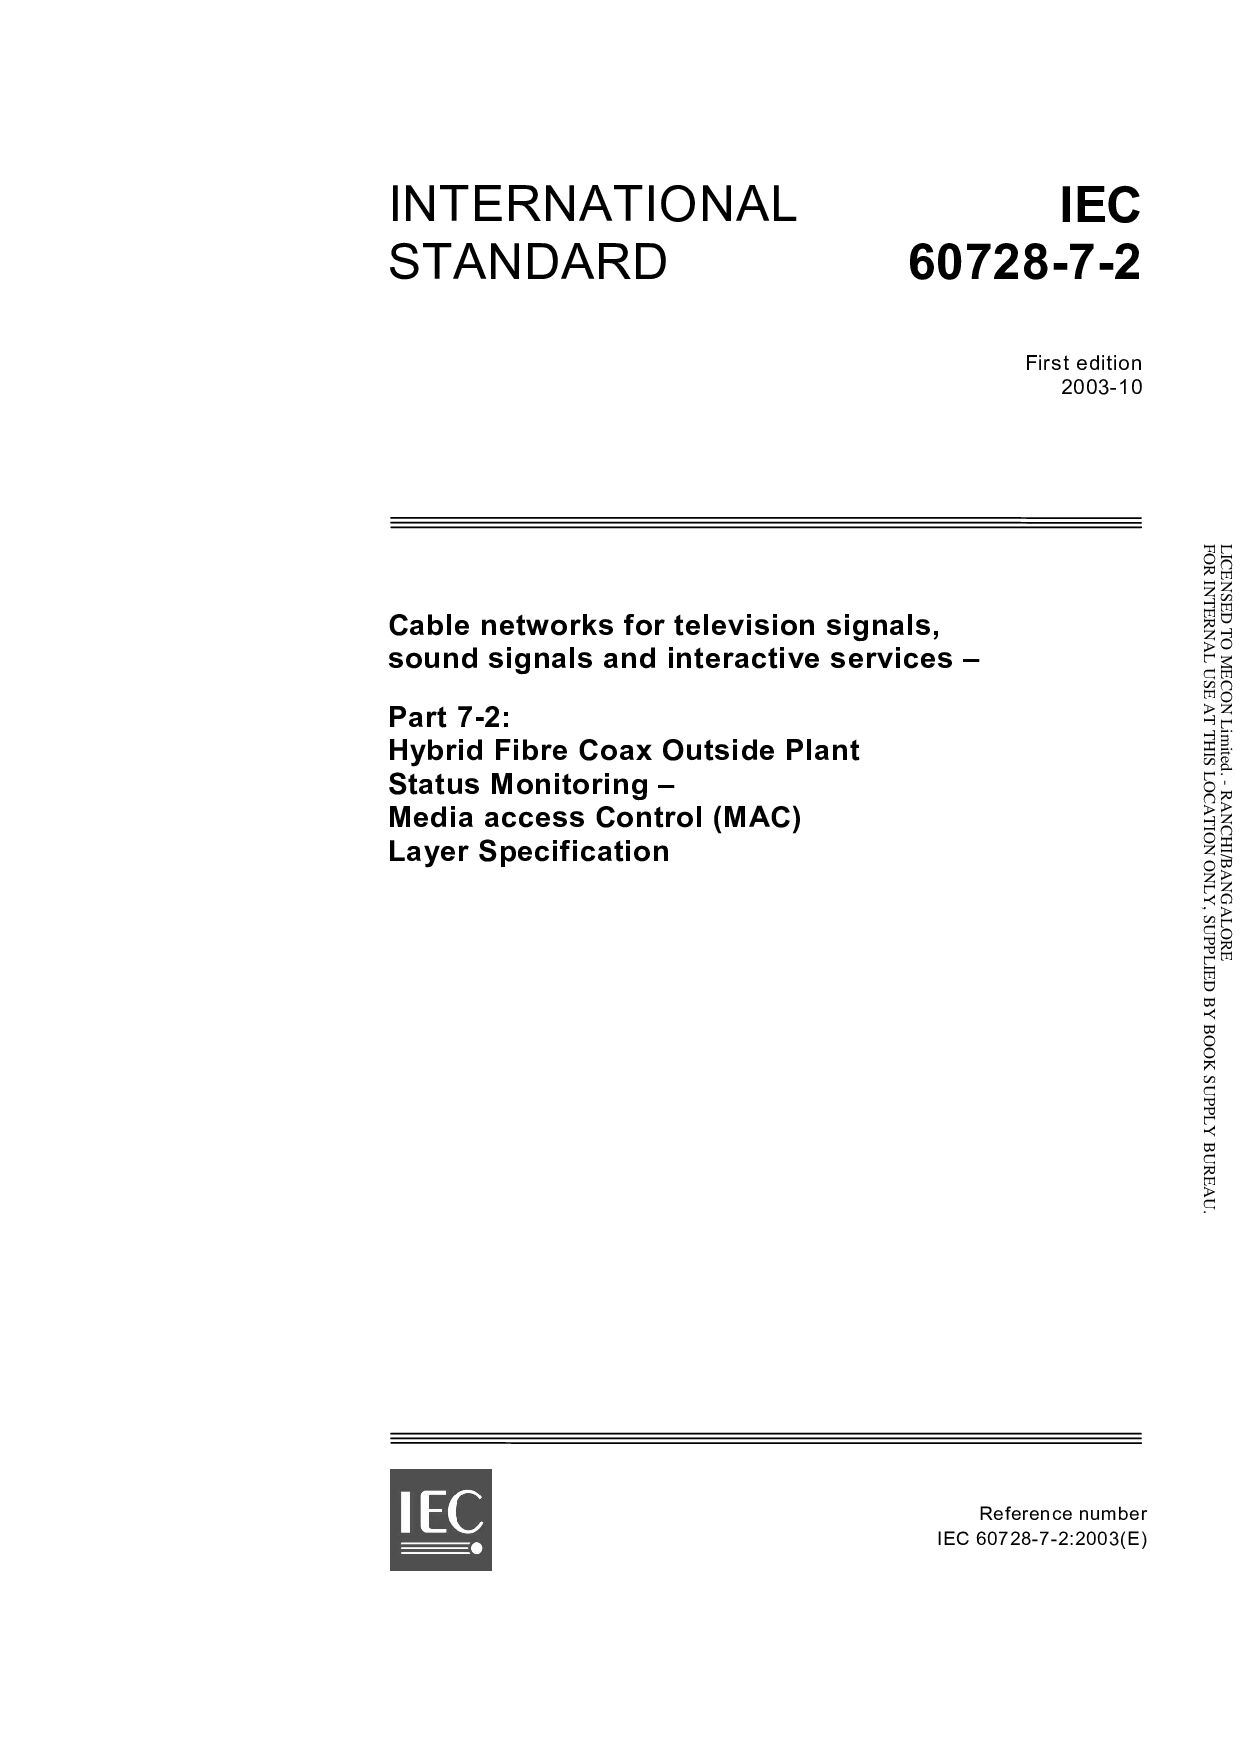 IEC 60728-7-2:2003